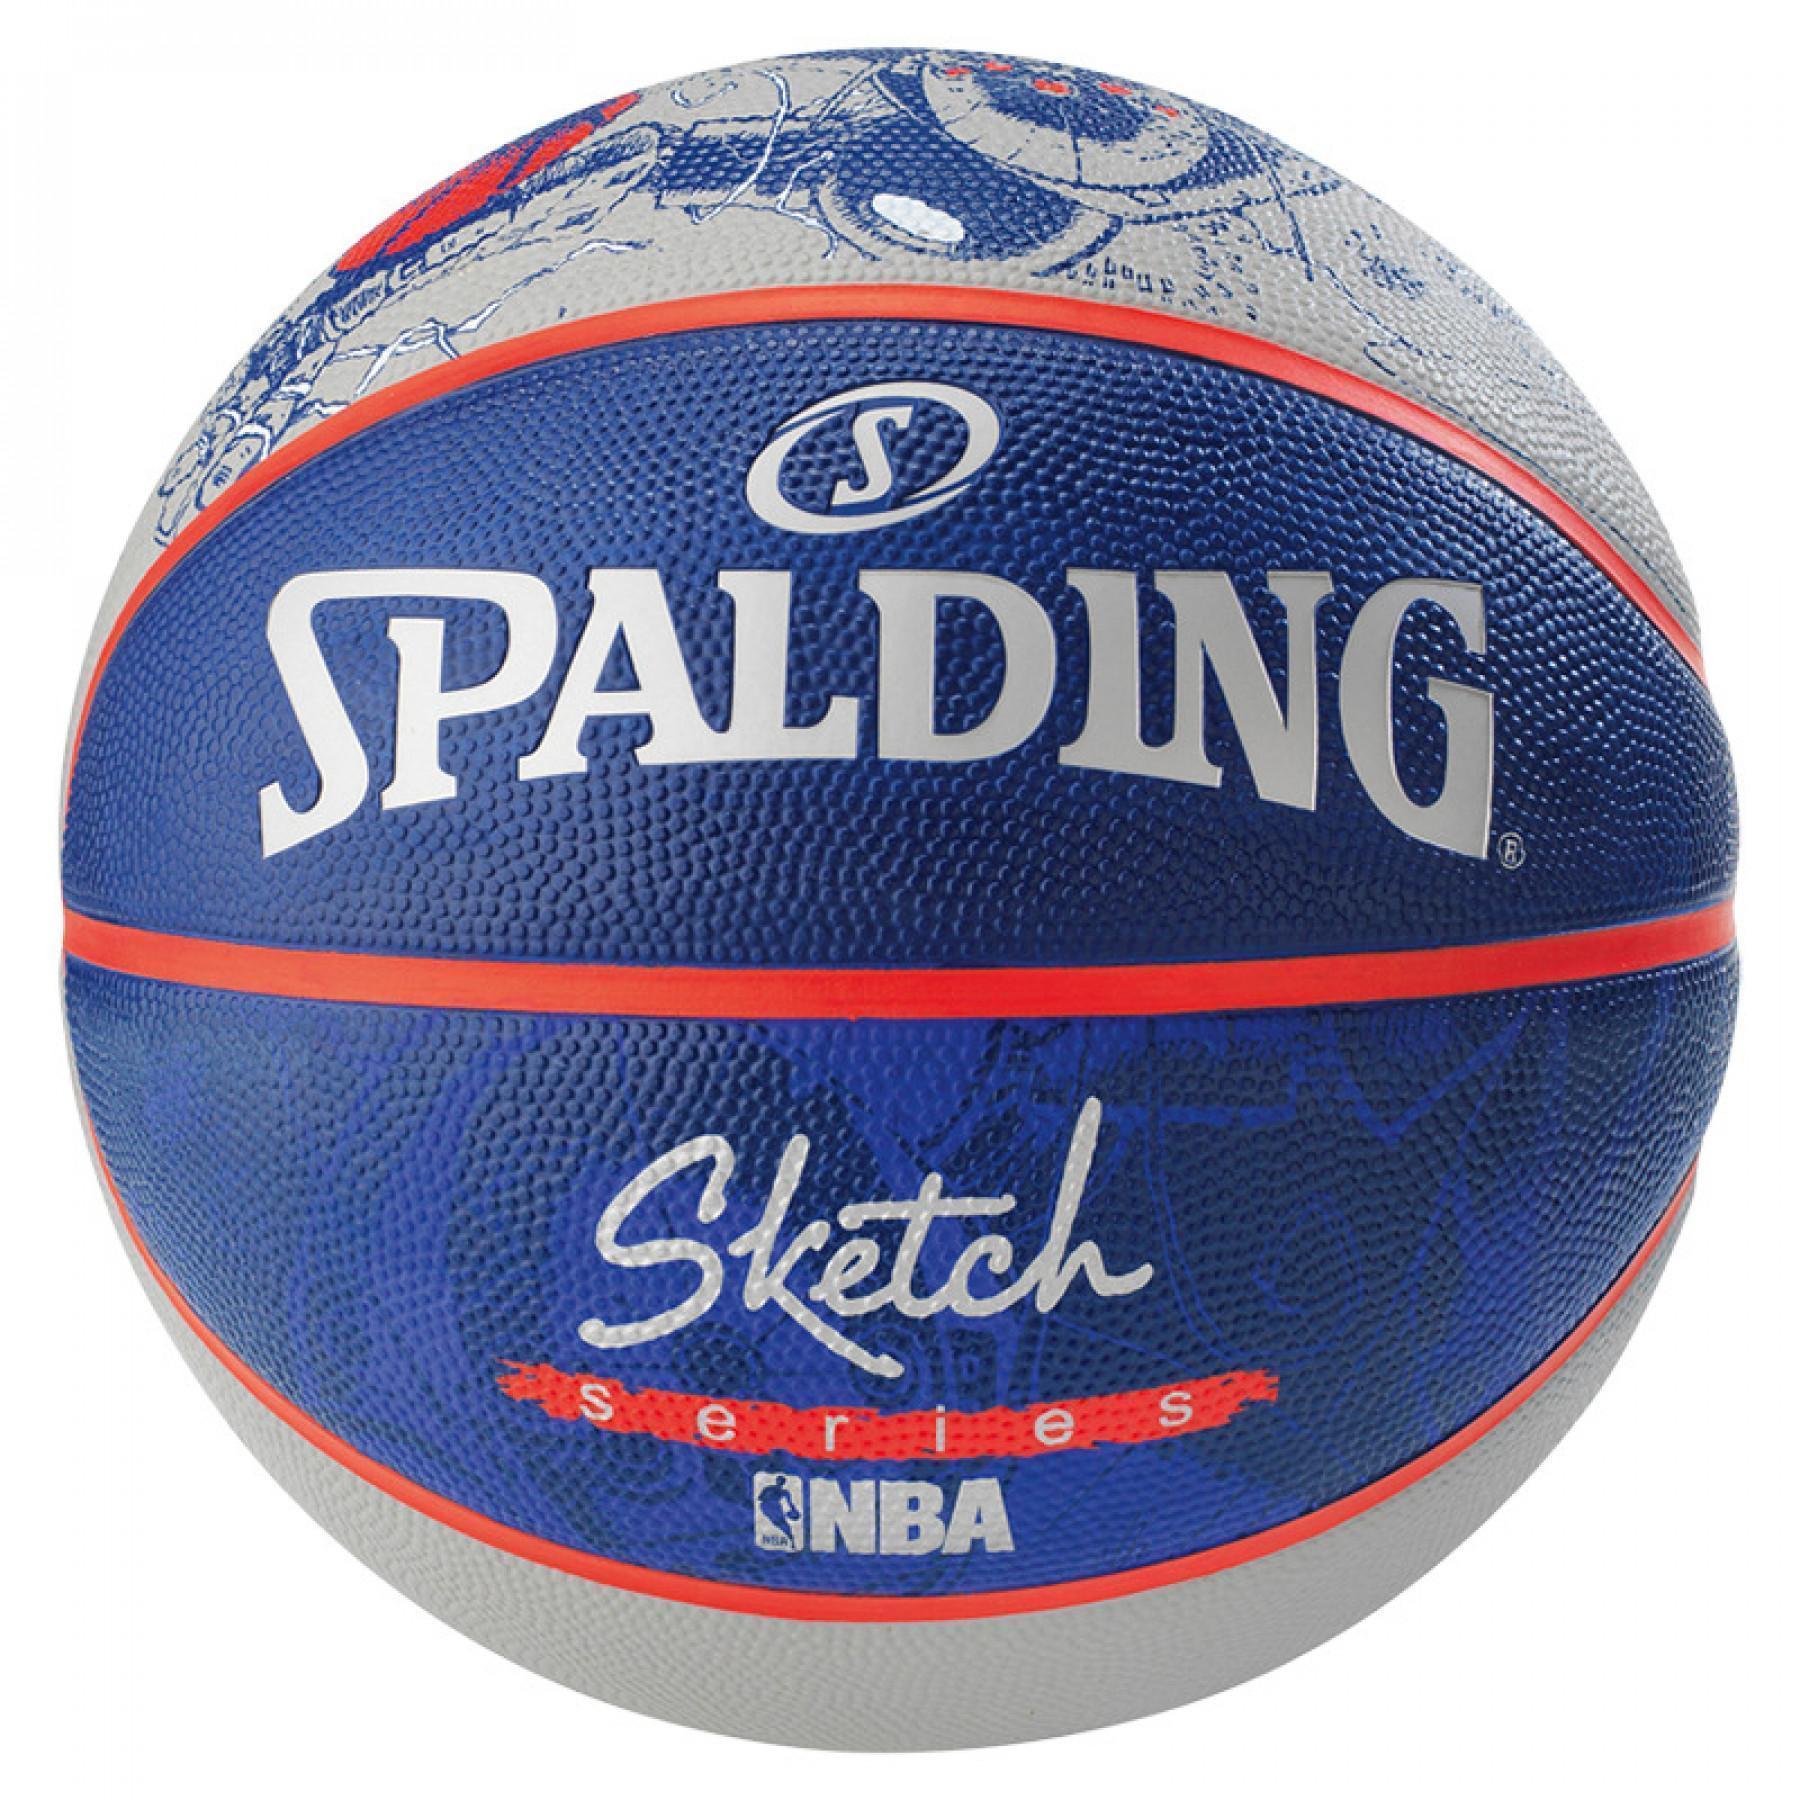 Balloon Spalding NBA Sketch Robot (83-677z)